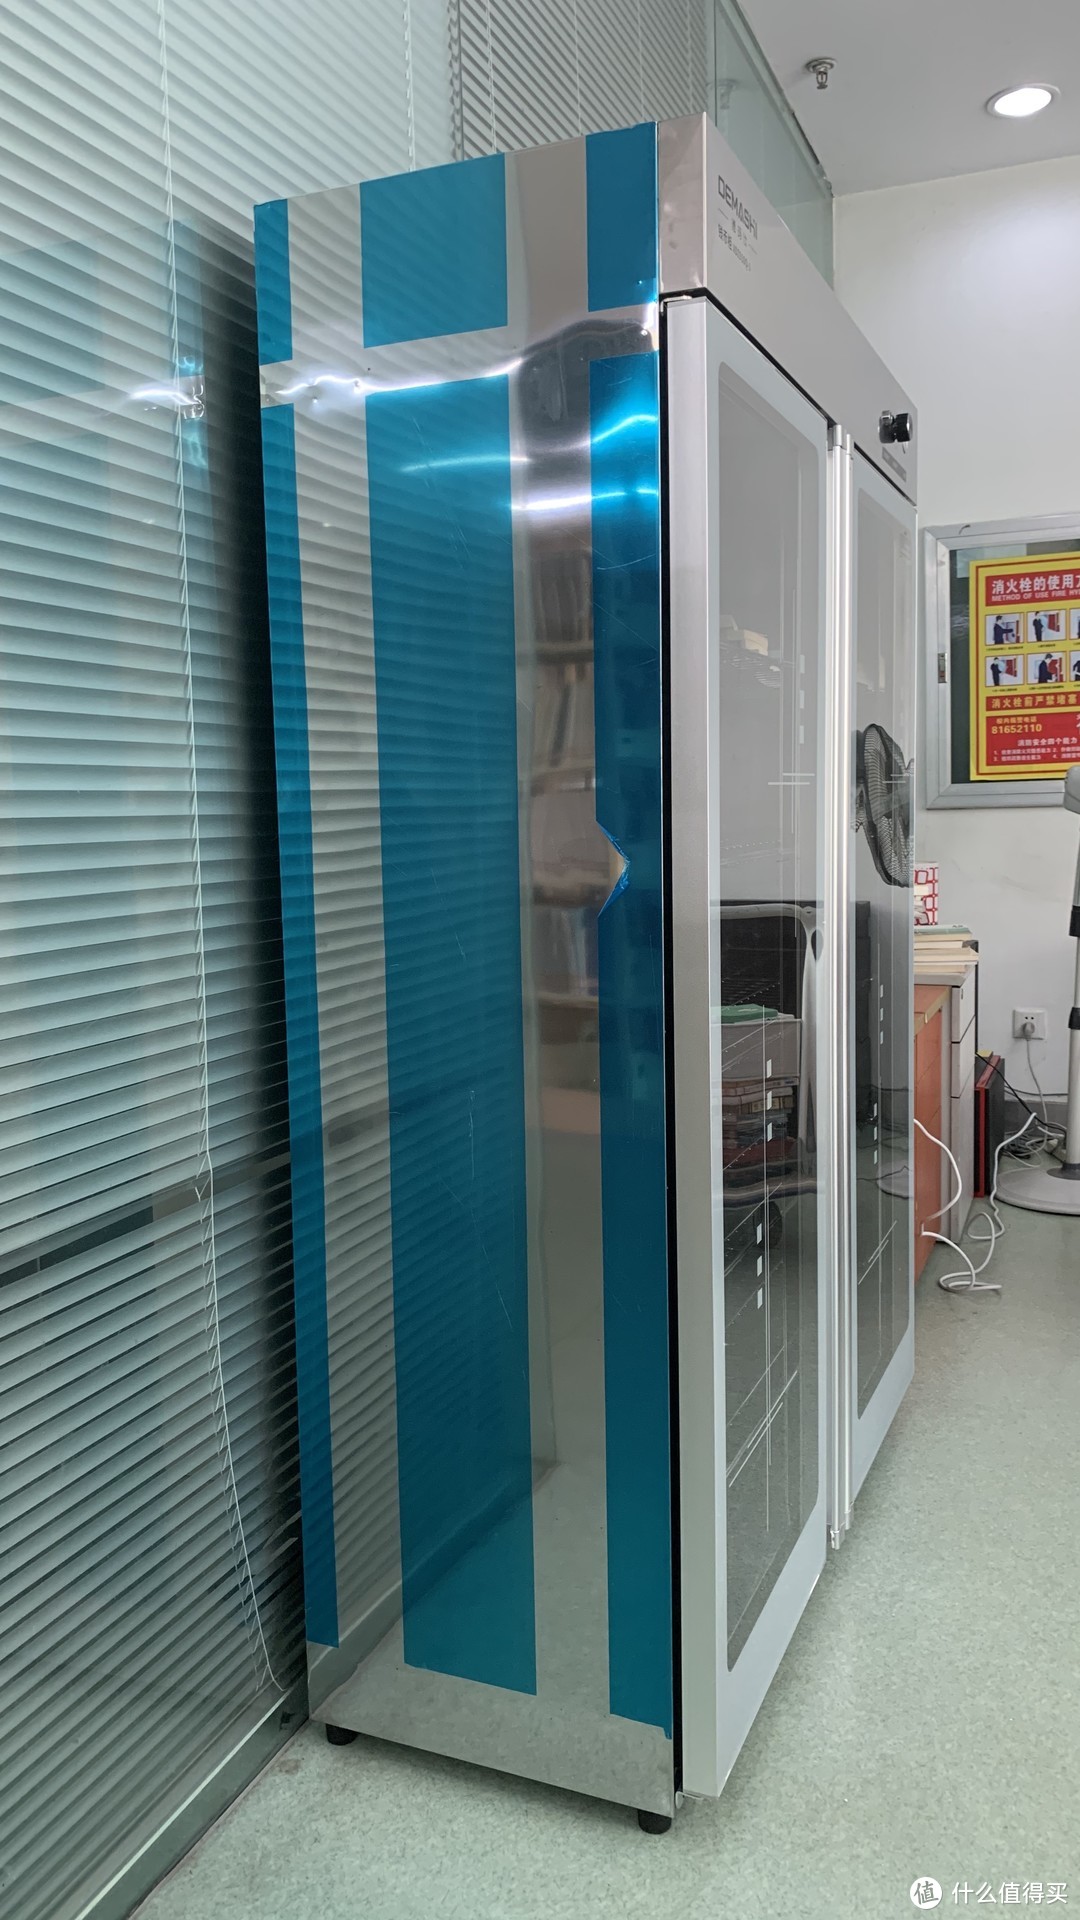 图书馆猿の德玛仕(DEMASHI) 立式紫外线消毒柜 XDZ910Q-1 简单晒